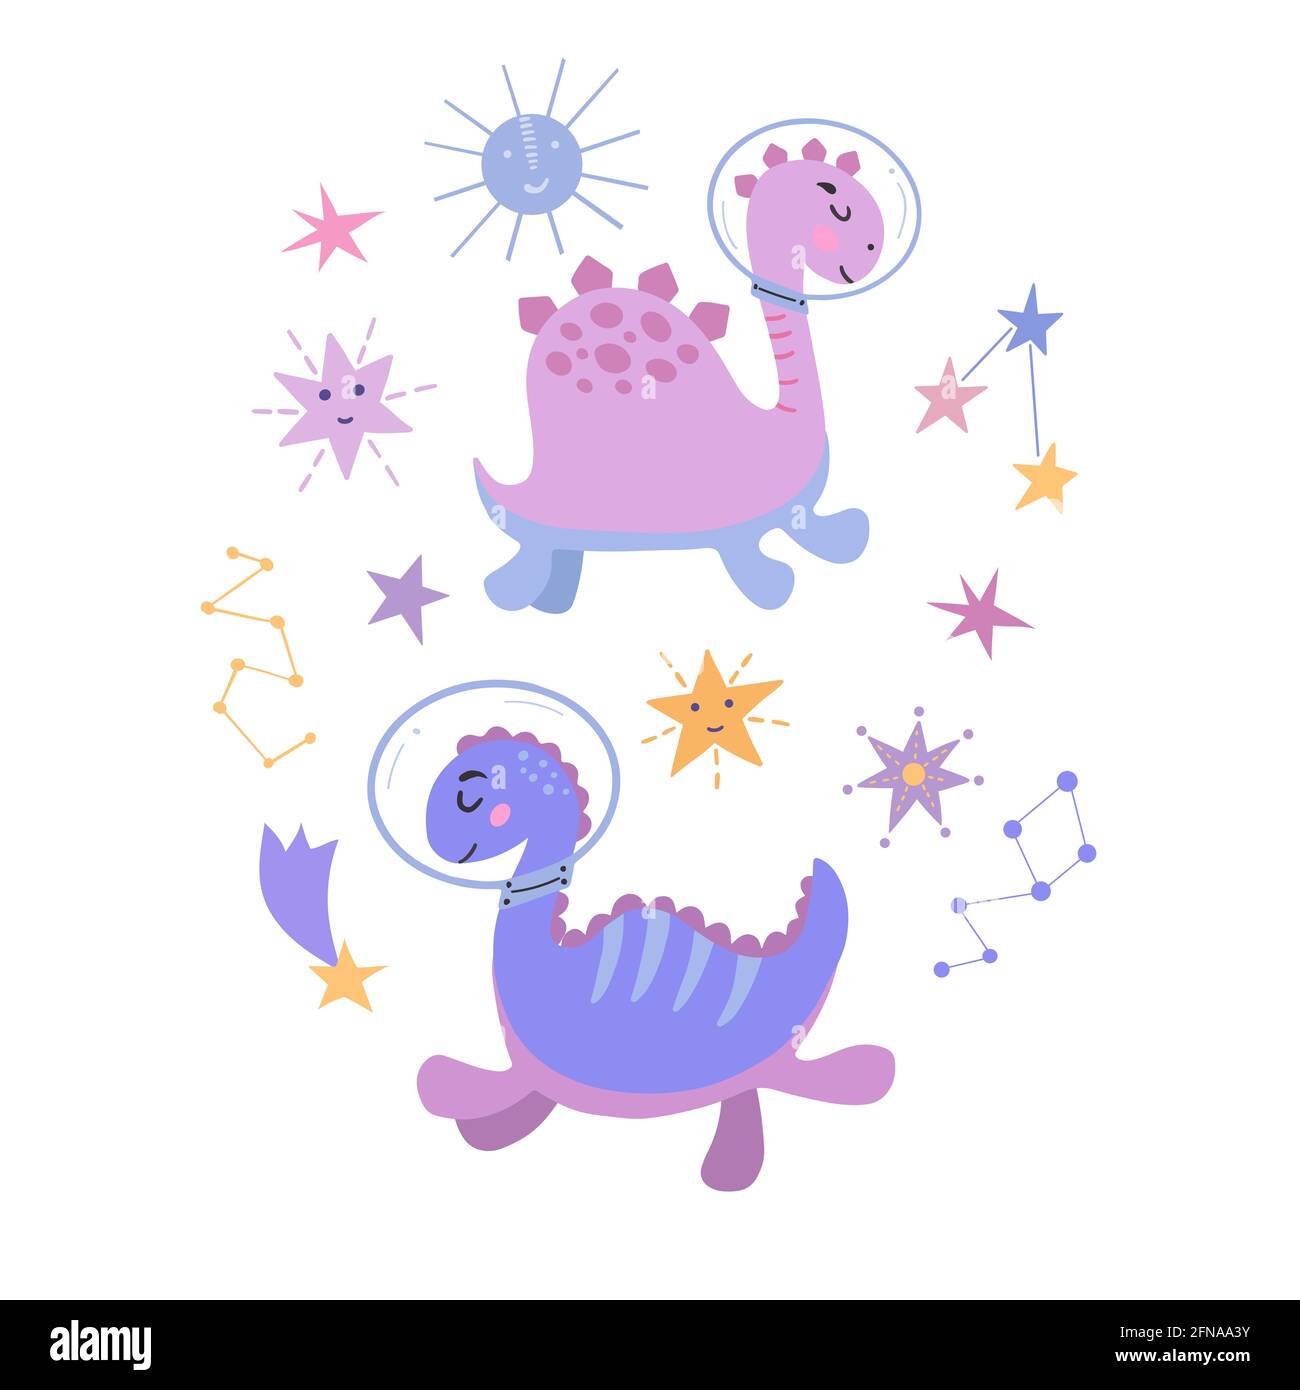 Image de dessins animés des dinosaures dans cosmos, graphiques vectoriels, sur un fond blanc. Pour la conception de cartes postales, affiches, imprimés pour t-shirts, mugs Illustration de Vecteur